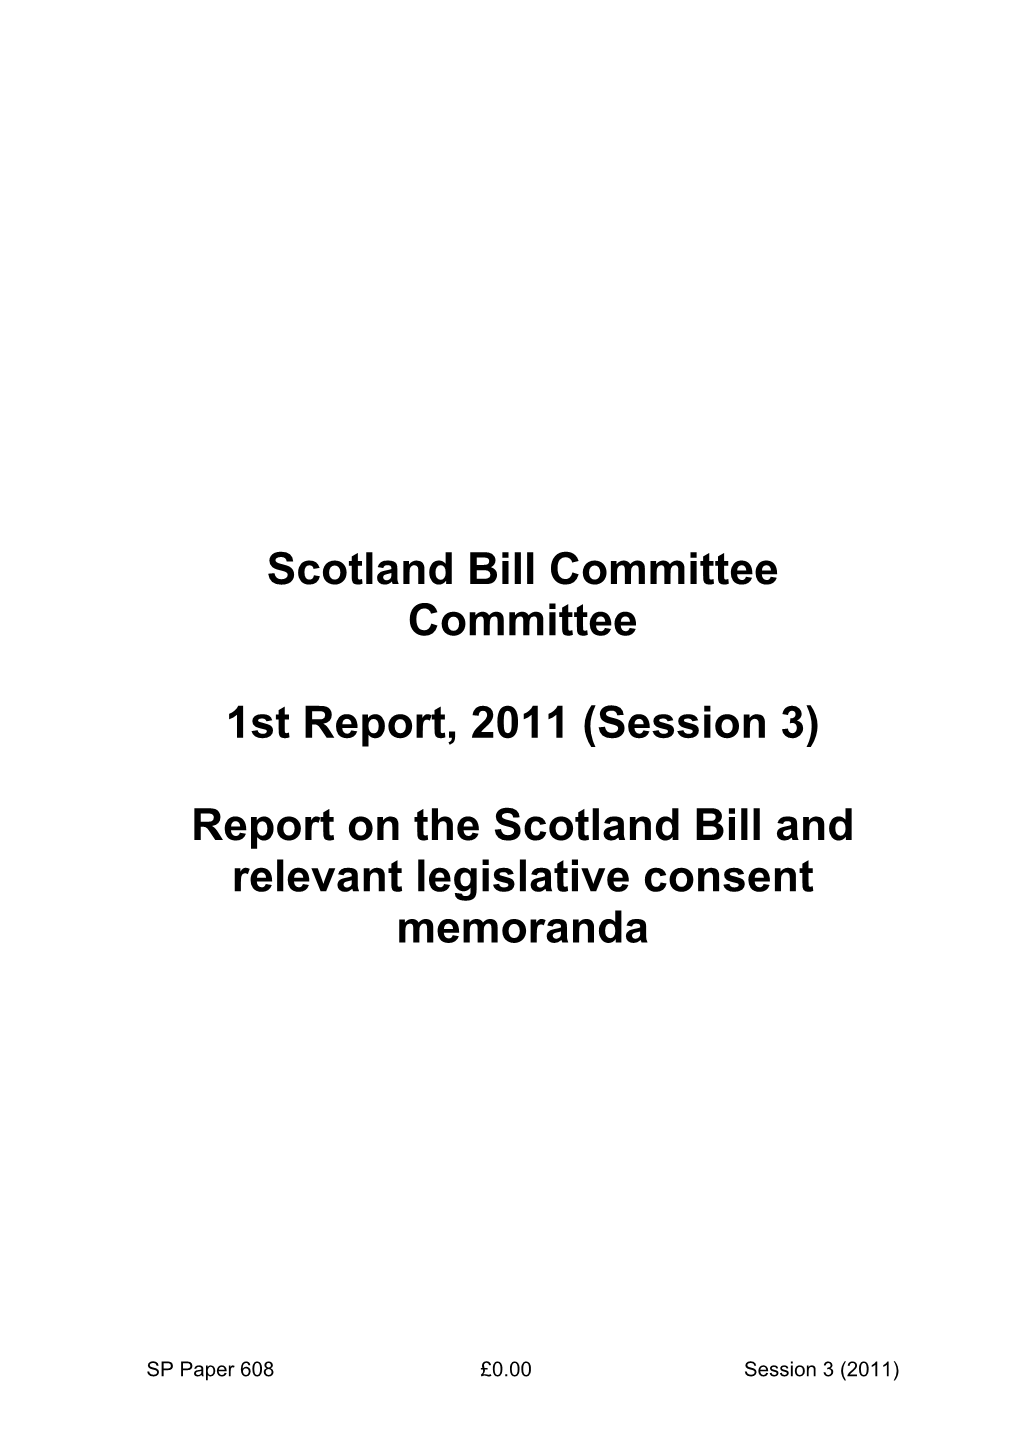 Report on the Scotland Bill and Relevant Legislative Consent Memoranda